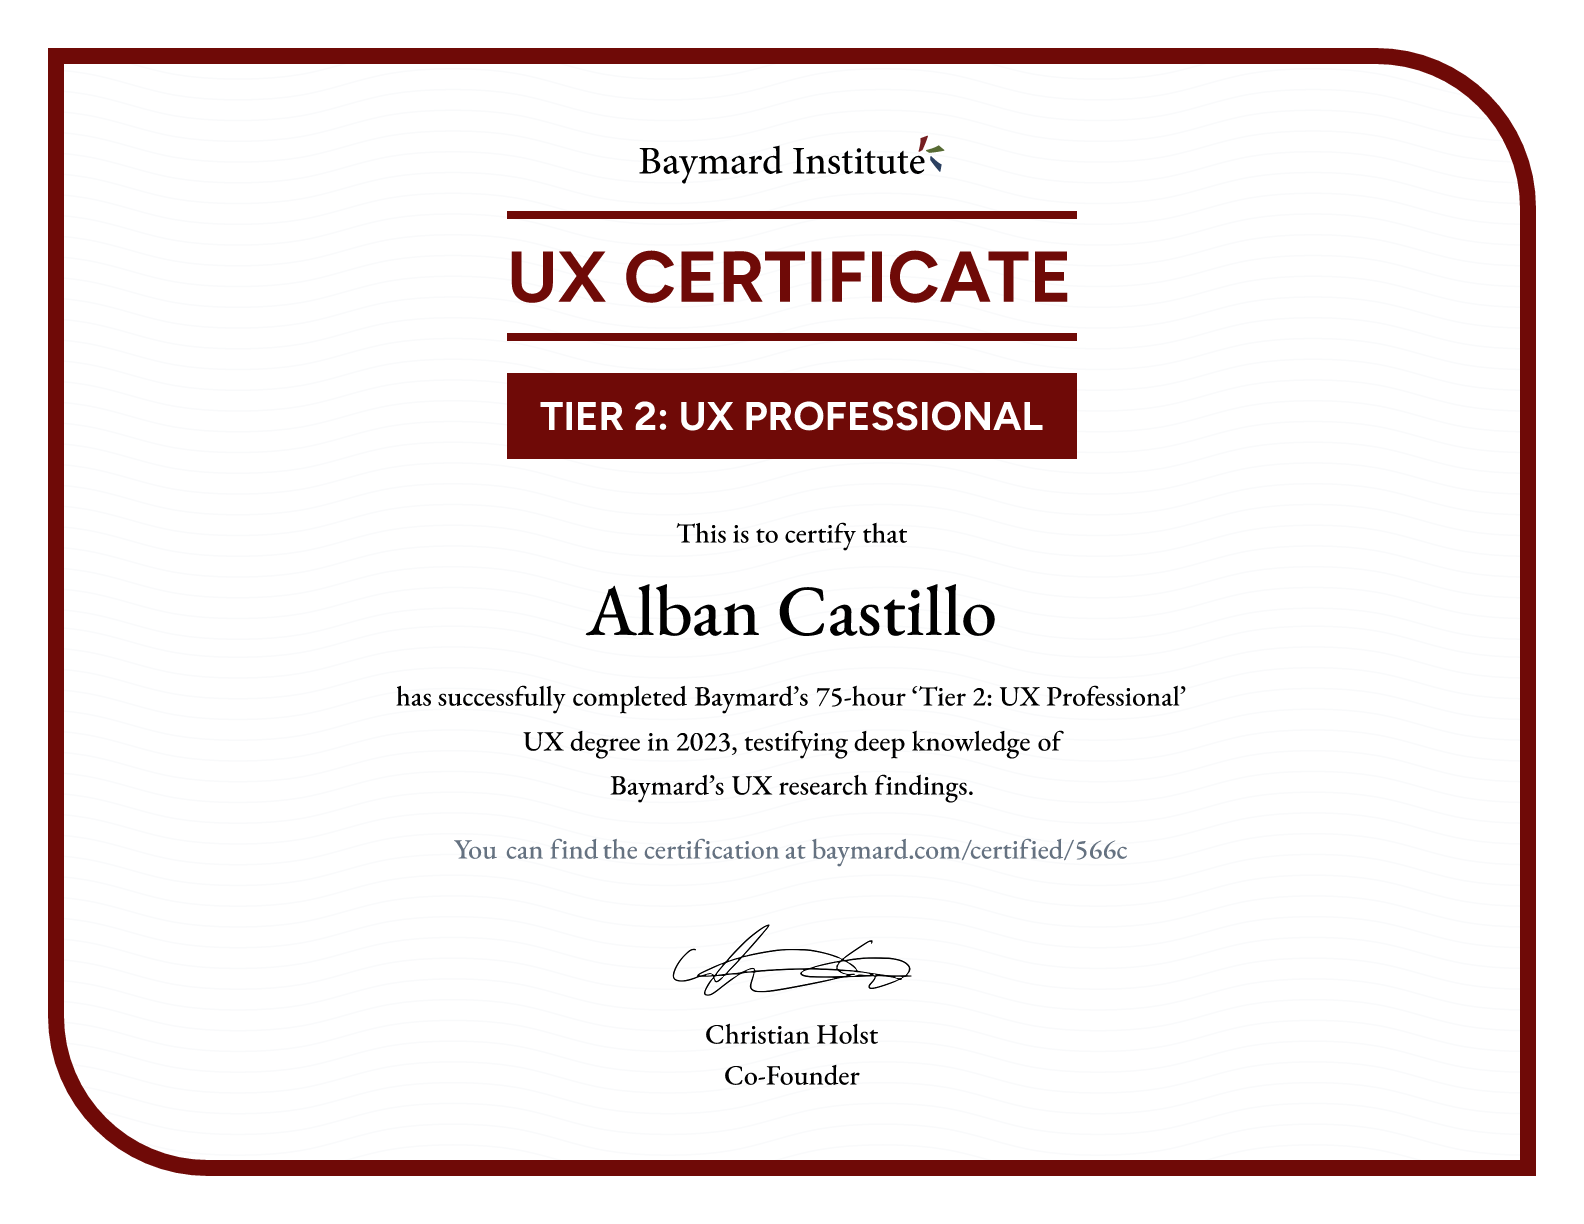 Alban Castillo’s certificate